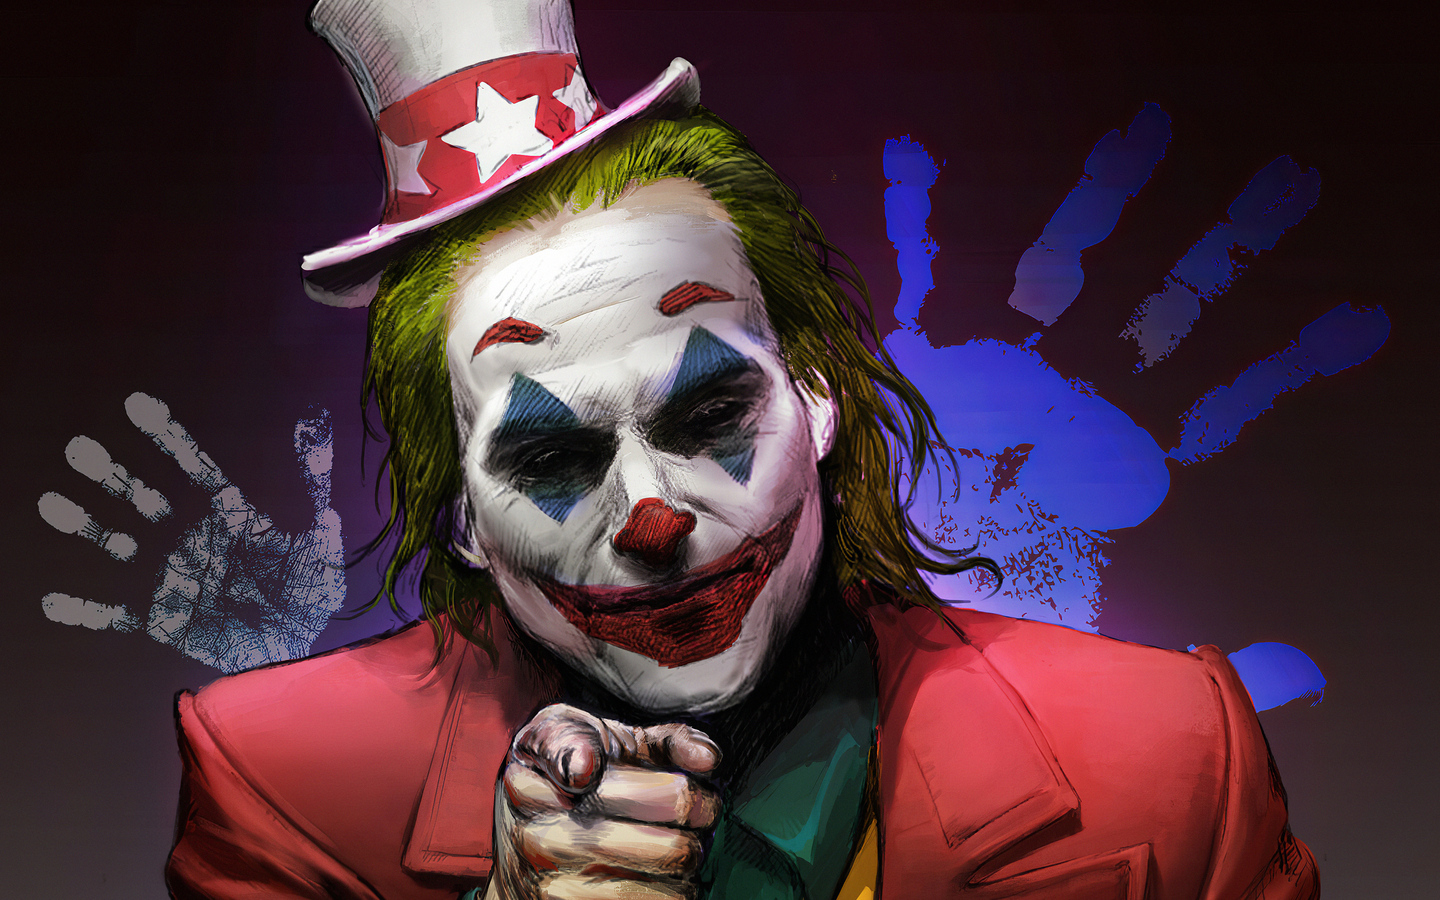 1440x900 Joker Clown Face 1440x900 Resolution HD 4k Wallpapers, Images ...